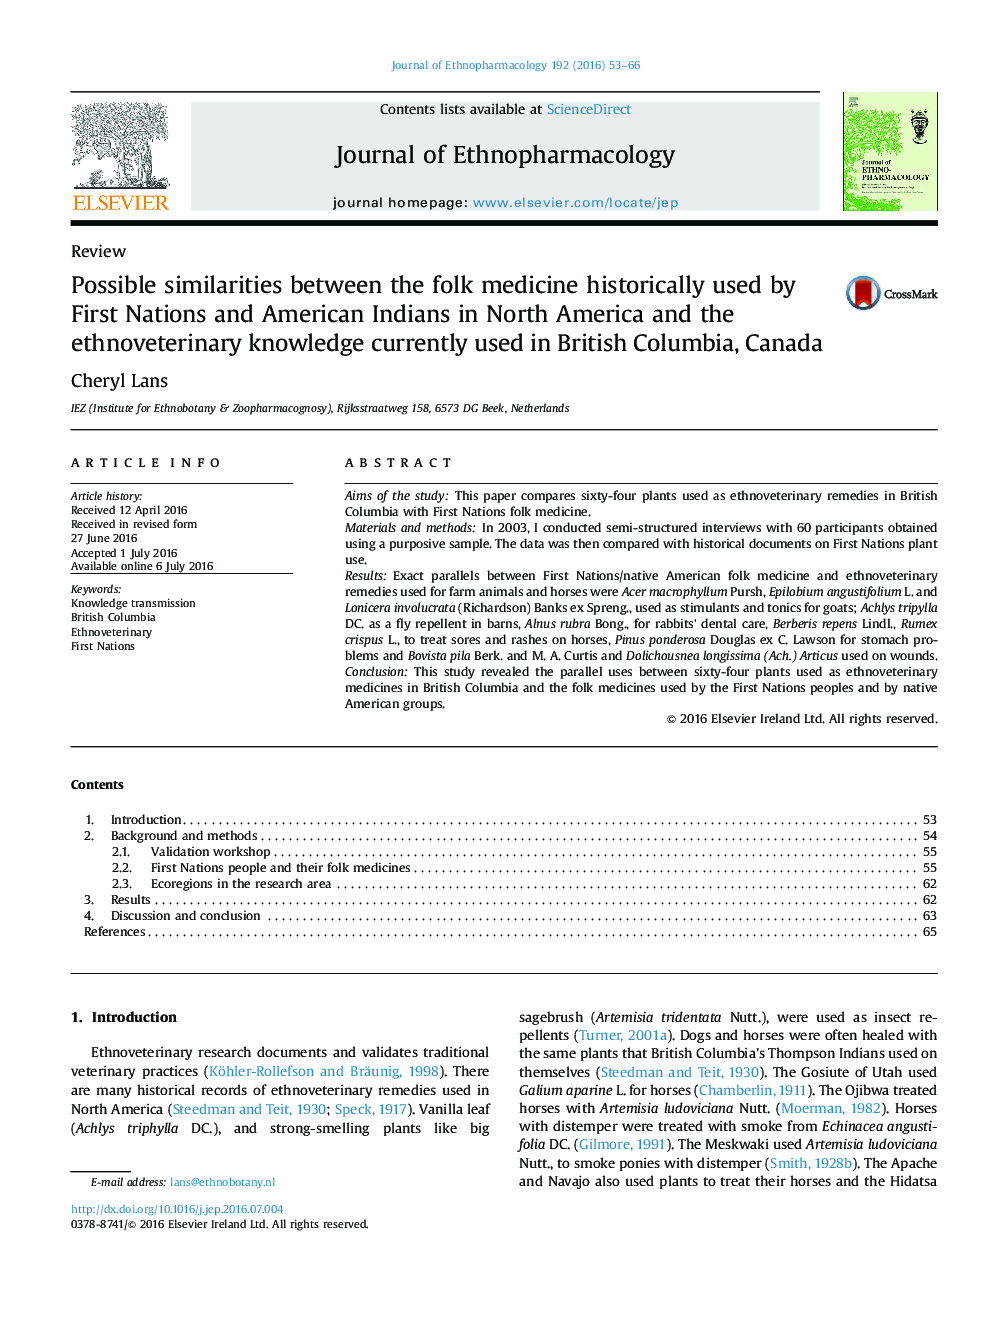 شباهت های احتمالی بین طب قومی که به طور تاریخی توسط سرخپوستان سرخپوست آمریکایی در آمریکای شمالی و دانش علوم قومی مورد استفاده در بریتیش کلمبیا، کانادا مورد استفاده قرار می گیرد 